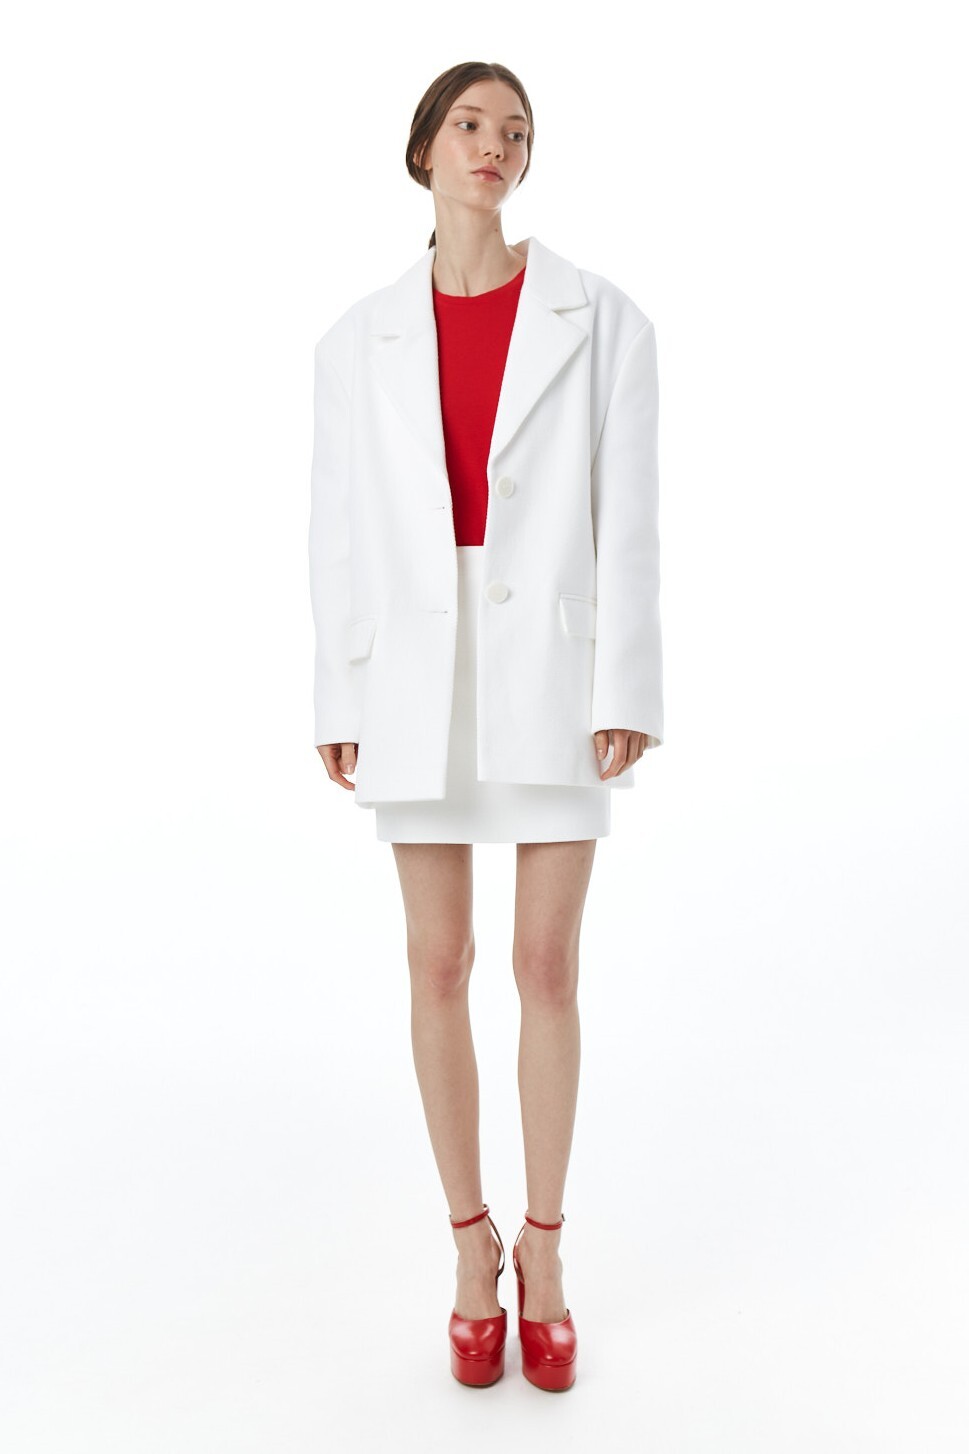 Пальто-пиджак женское, хлопковая шанель, белая рогожка